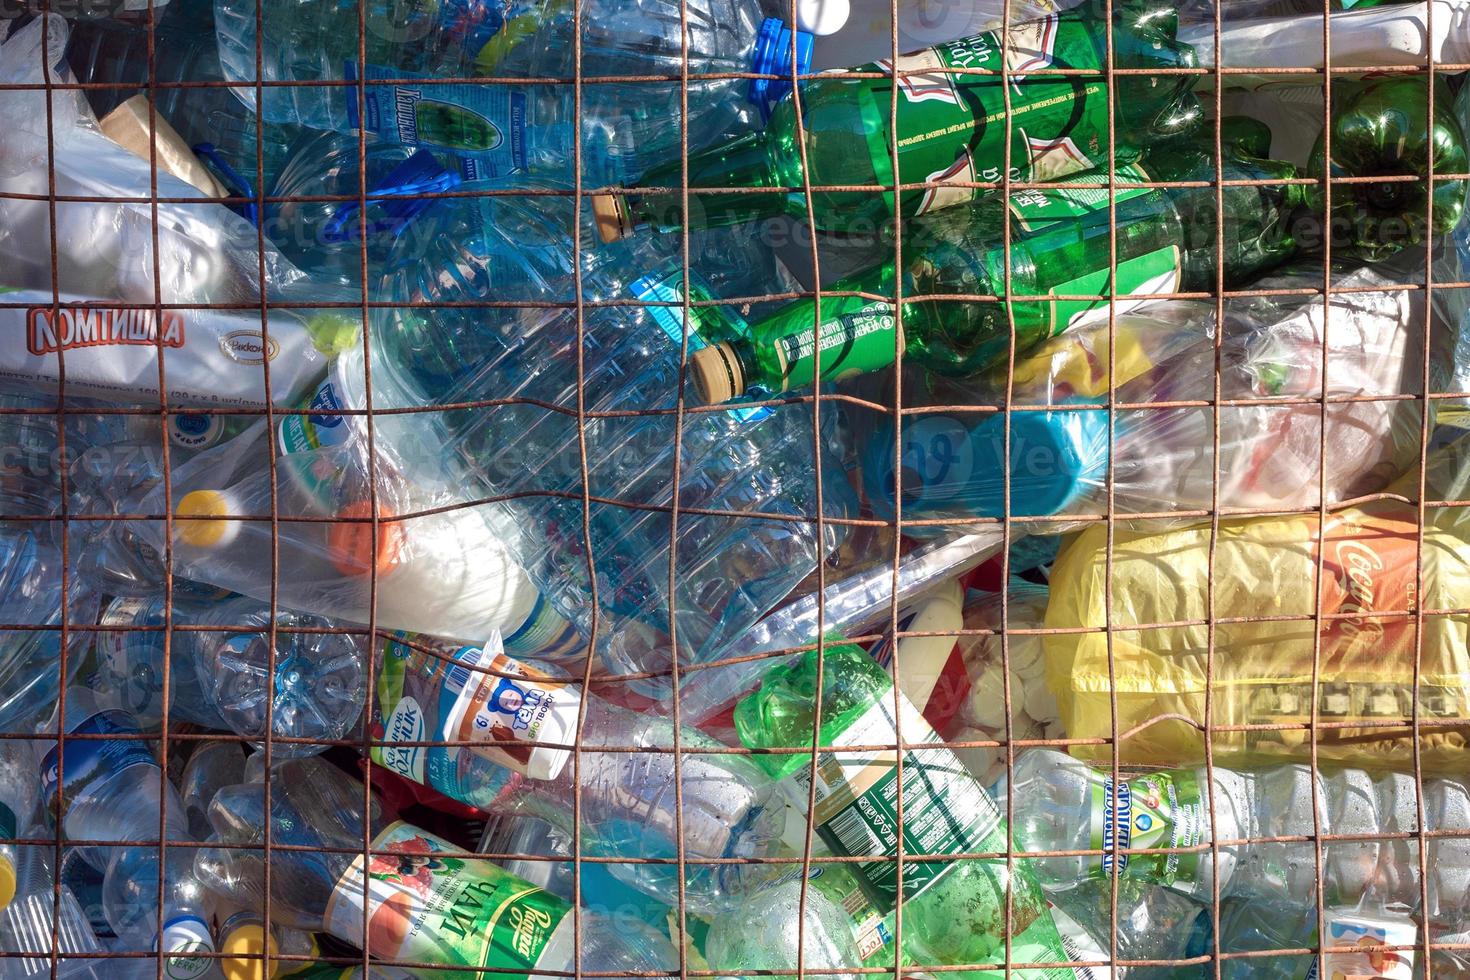 vol houder van plastic huishouden verspilling voor recycling foto